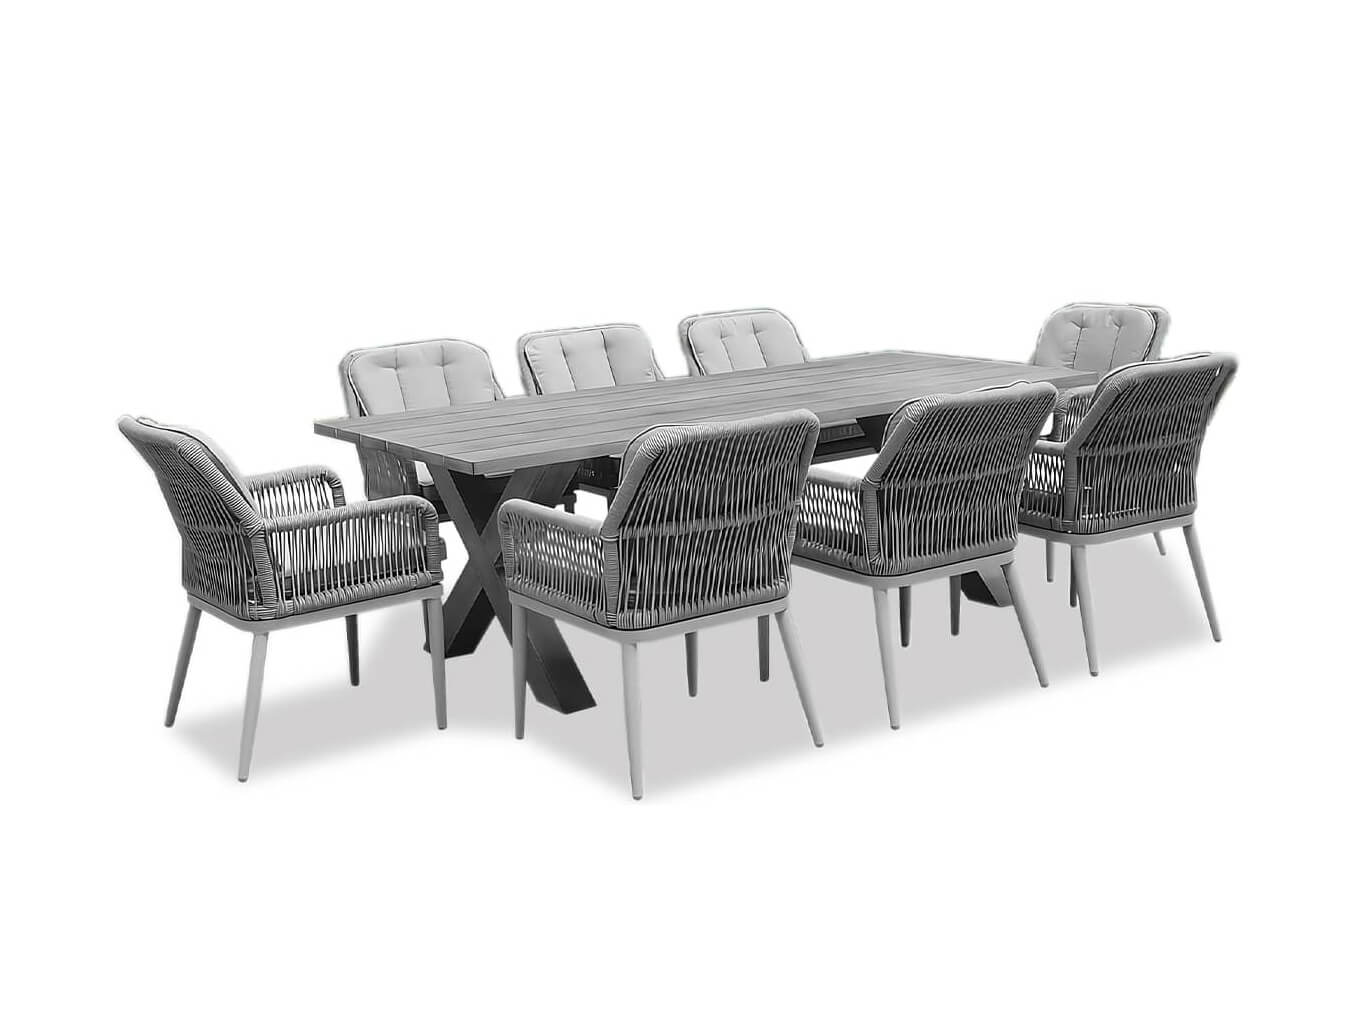 aluminium dining table for 8 -LUX FURNITURE